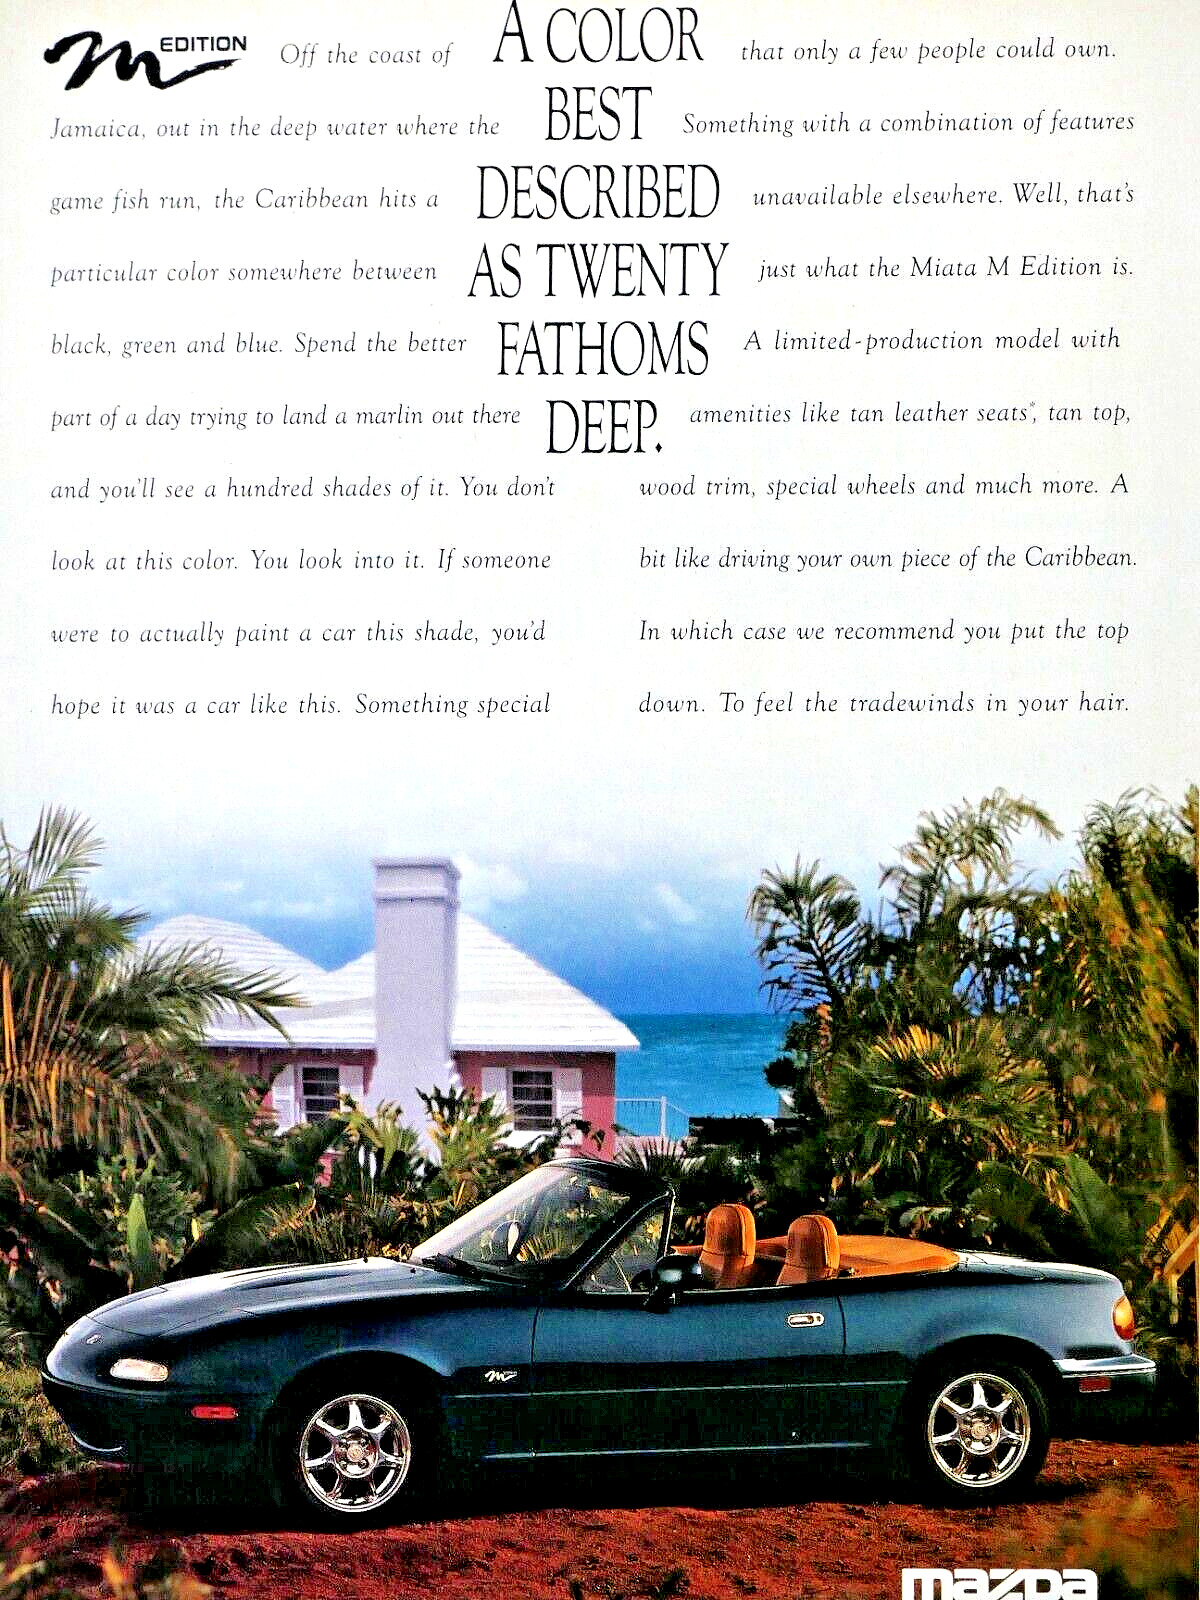 1994 Mazda Miata MX 5 Convertible Vintage 20 Fathoms Deep Original Print Ad